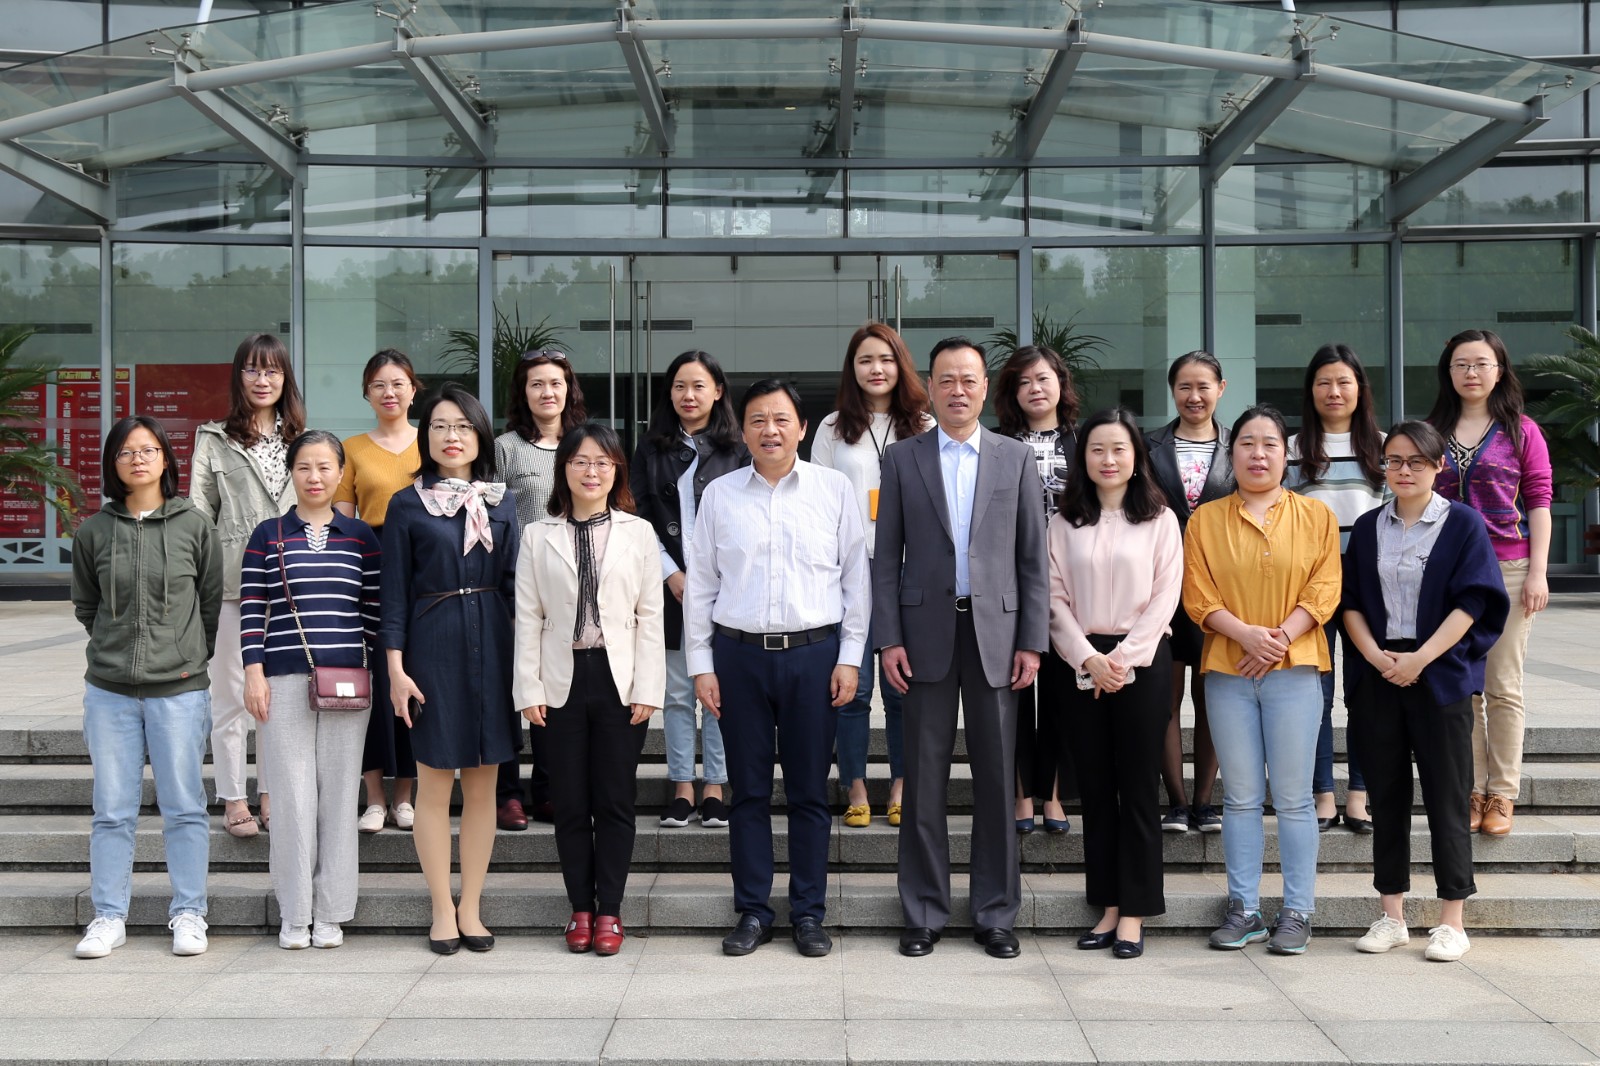 上海工程技术大学召开第一届妇工委第三次会议暨第六